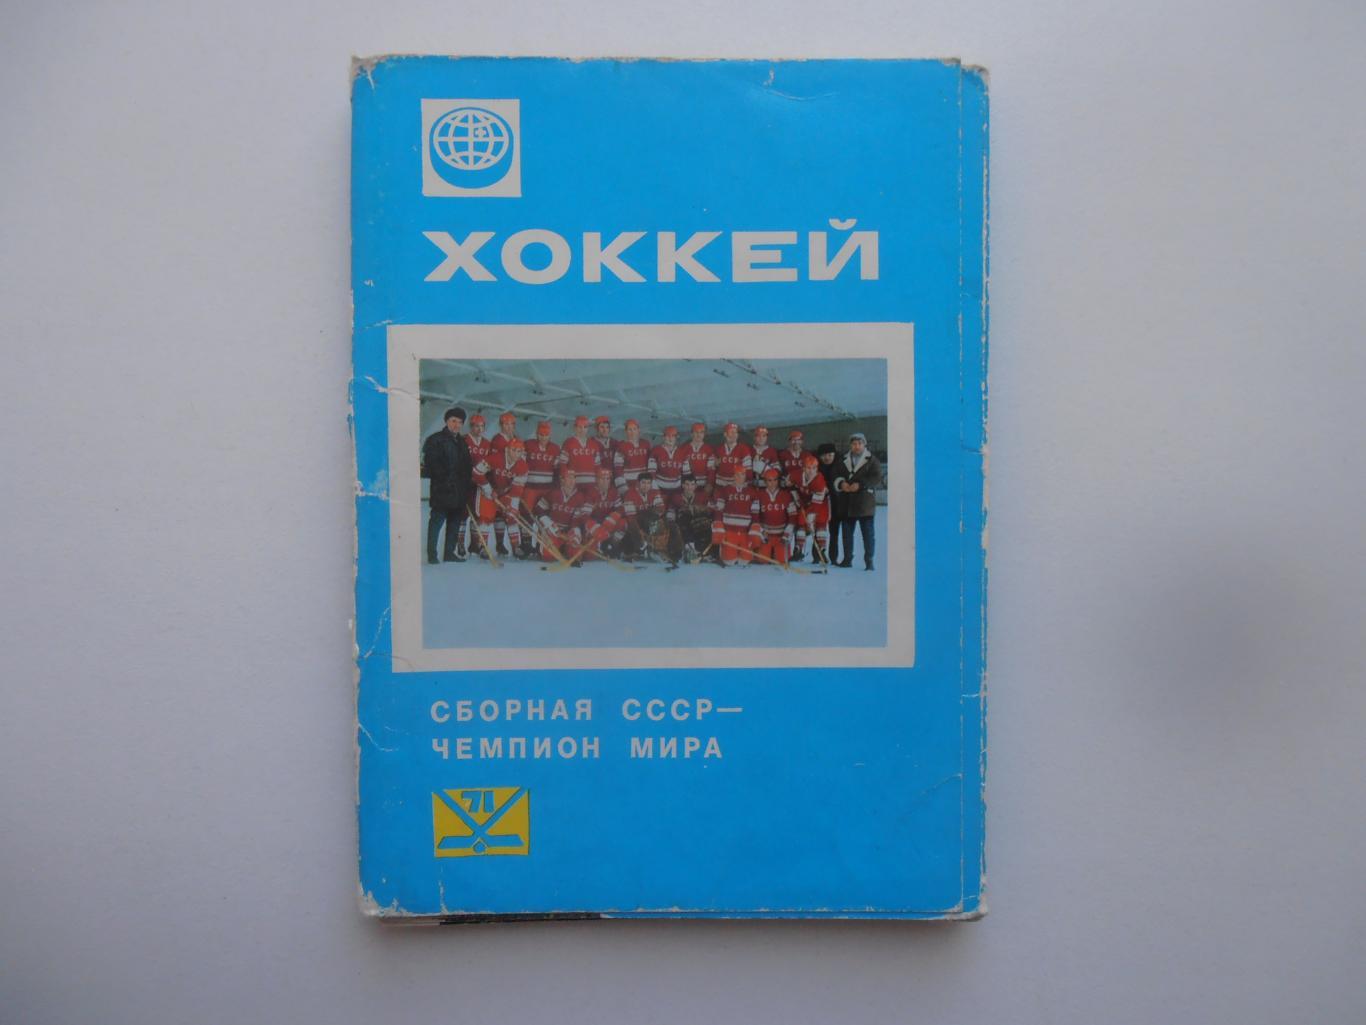 Набор сборная СССР-чемпион Мира по хоккею 1971